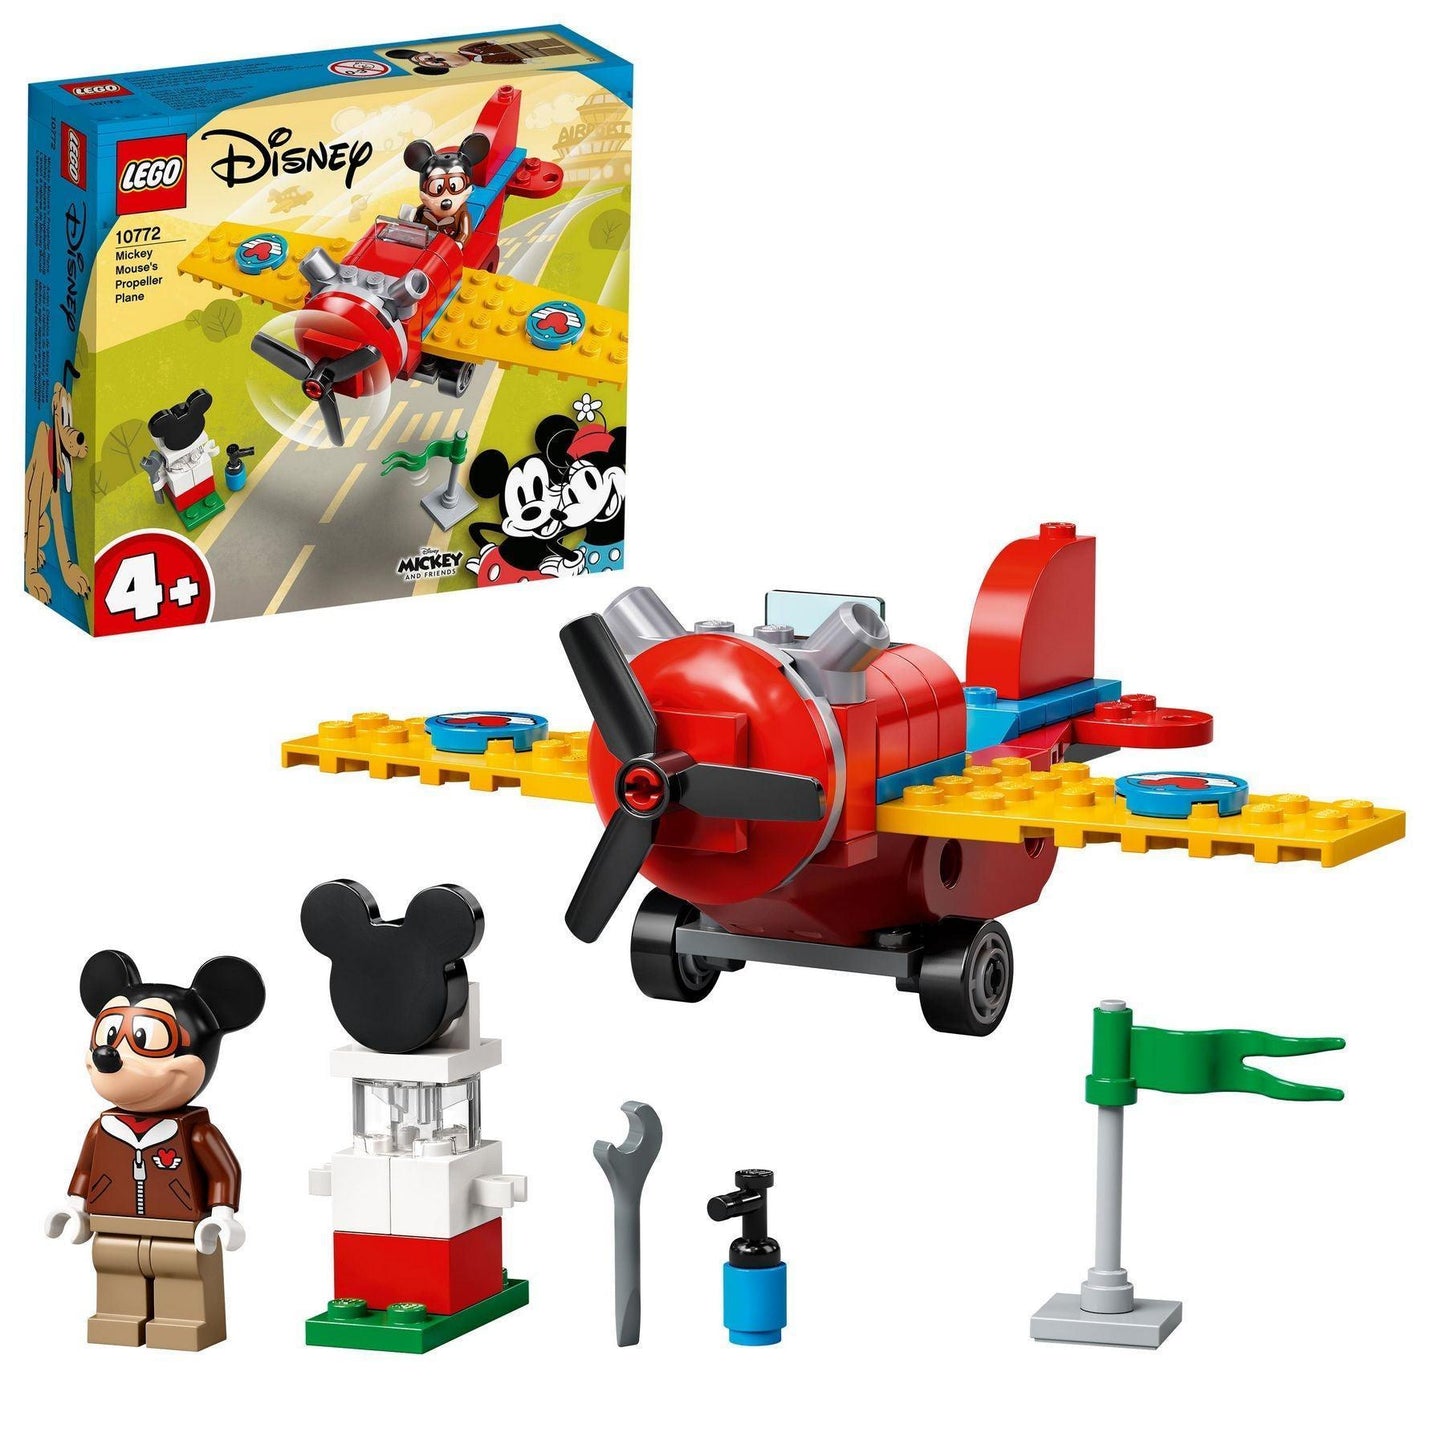 LEGO Mickey Mouse Propeller Vliegtuig 10772 Disney | 2TTOYS ✓ Official shop<br>